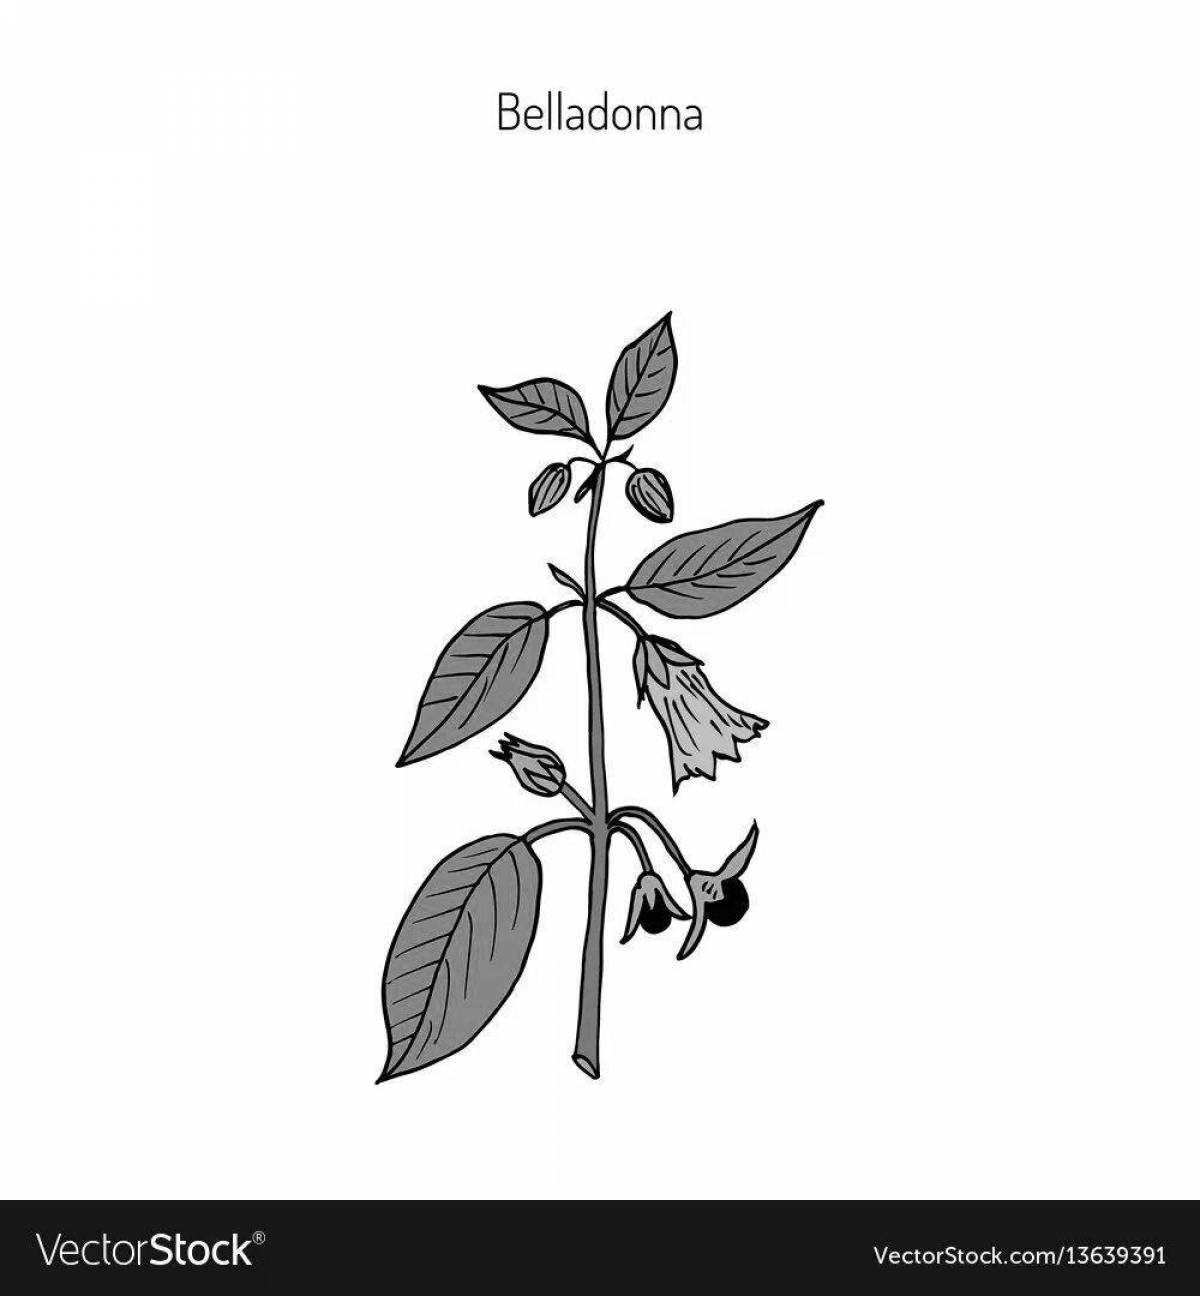 Shining belladonna coloring book